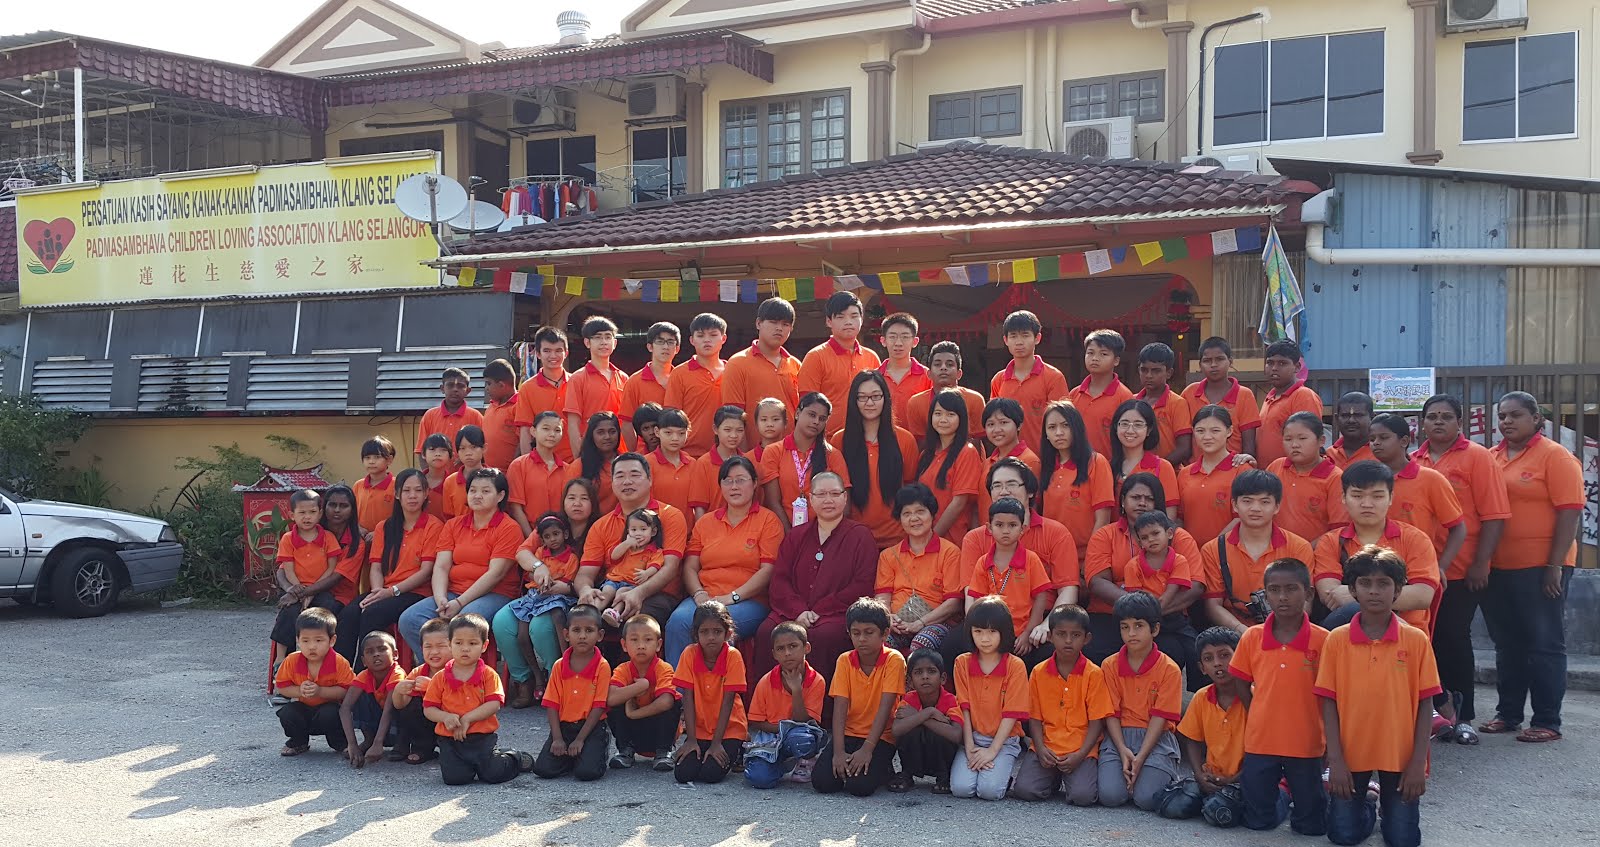 Padmasambhava Children Loving Association Klang Selangor